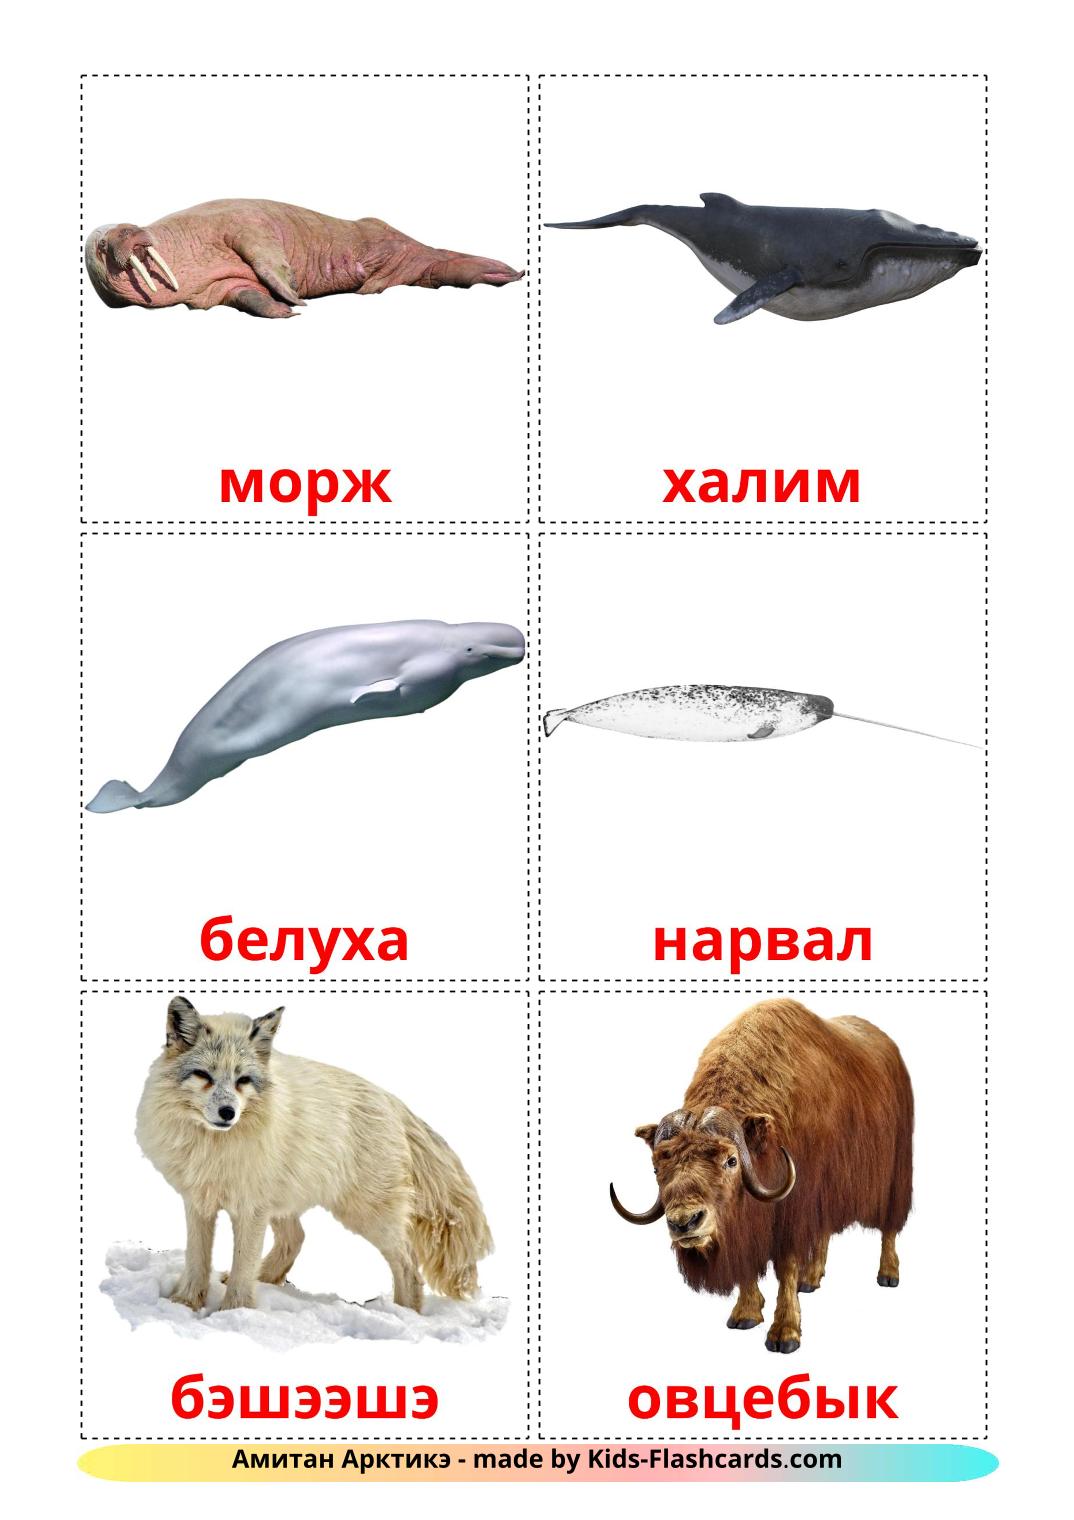 Tiere in der arktis - 14 kostenlose, druckbare burjatische Flashcards 